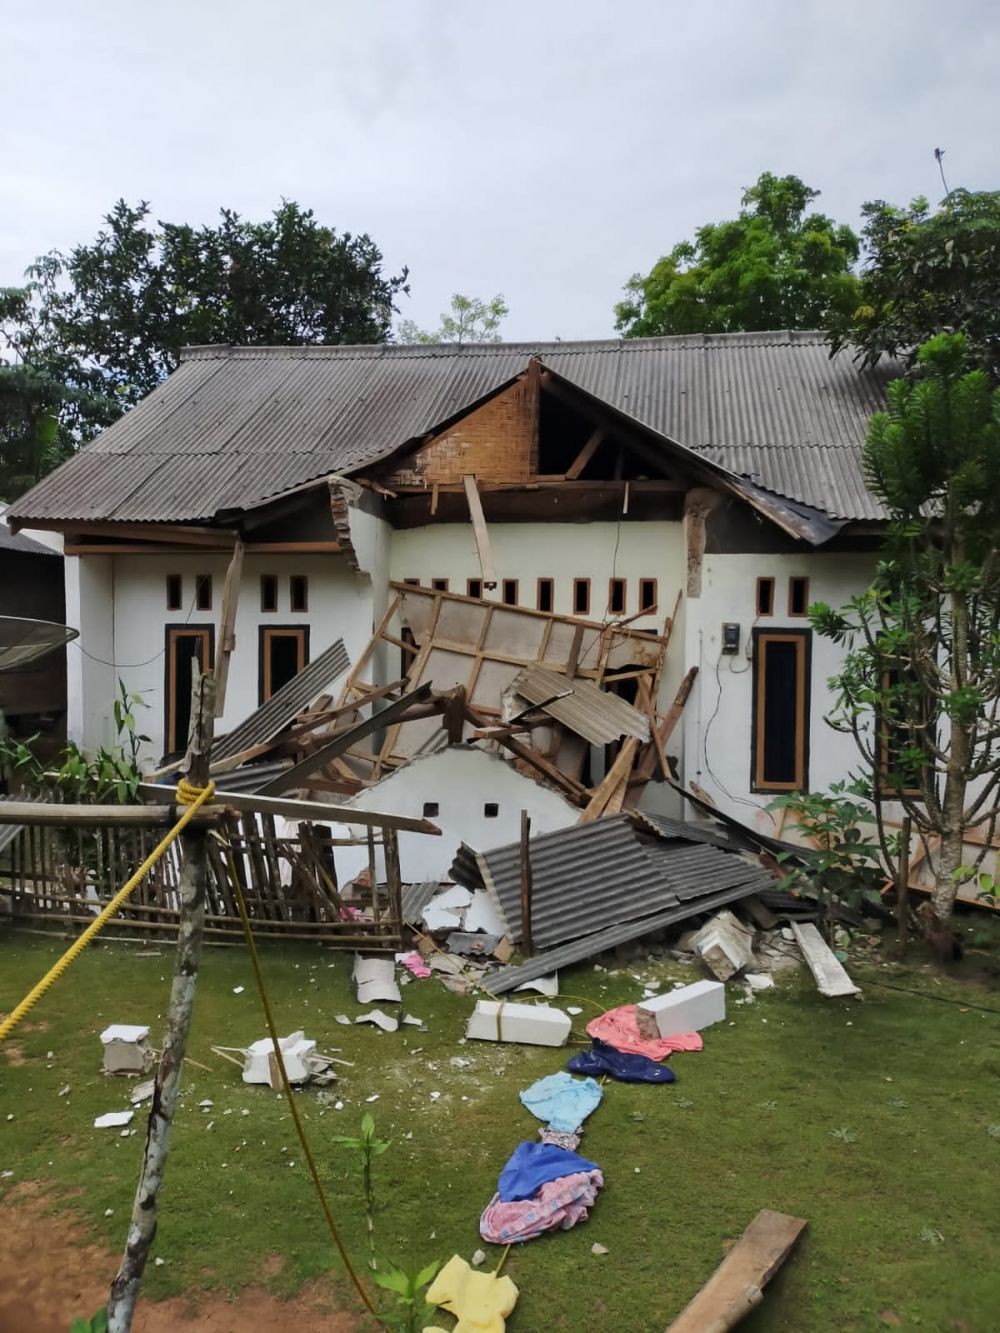 Gempa M6,7, BPBD Pandeglang: Belum Ada Laporan Korban Jiwa